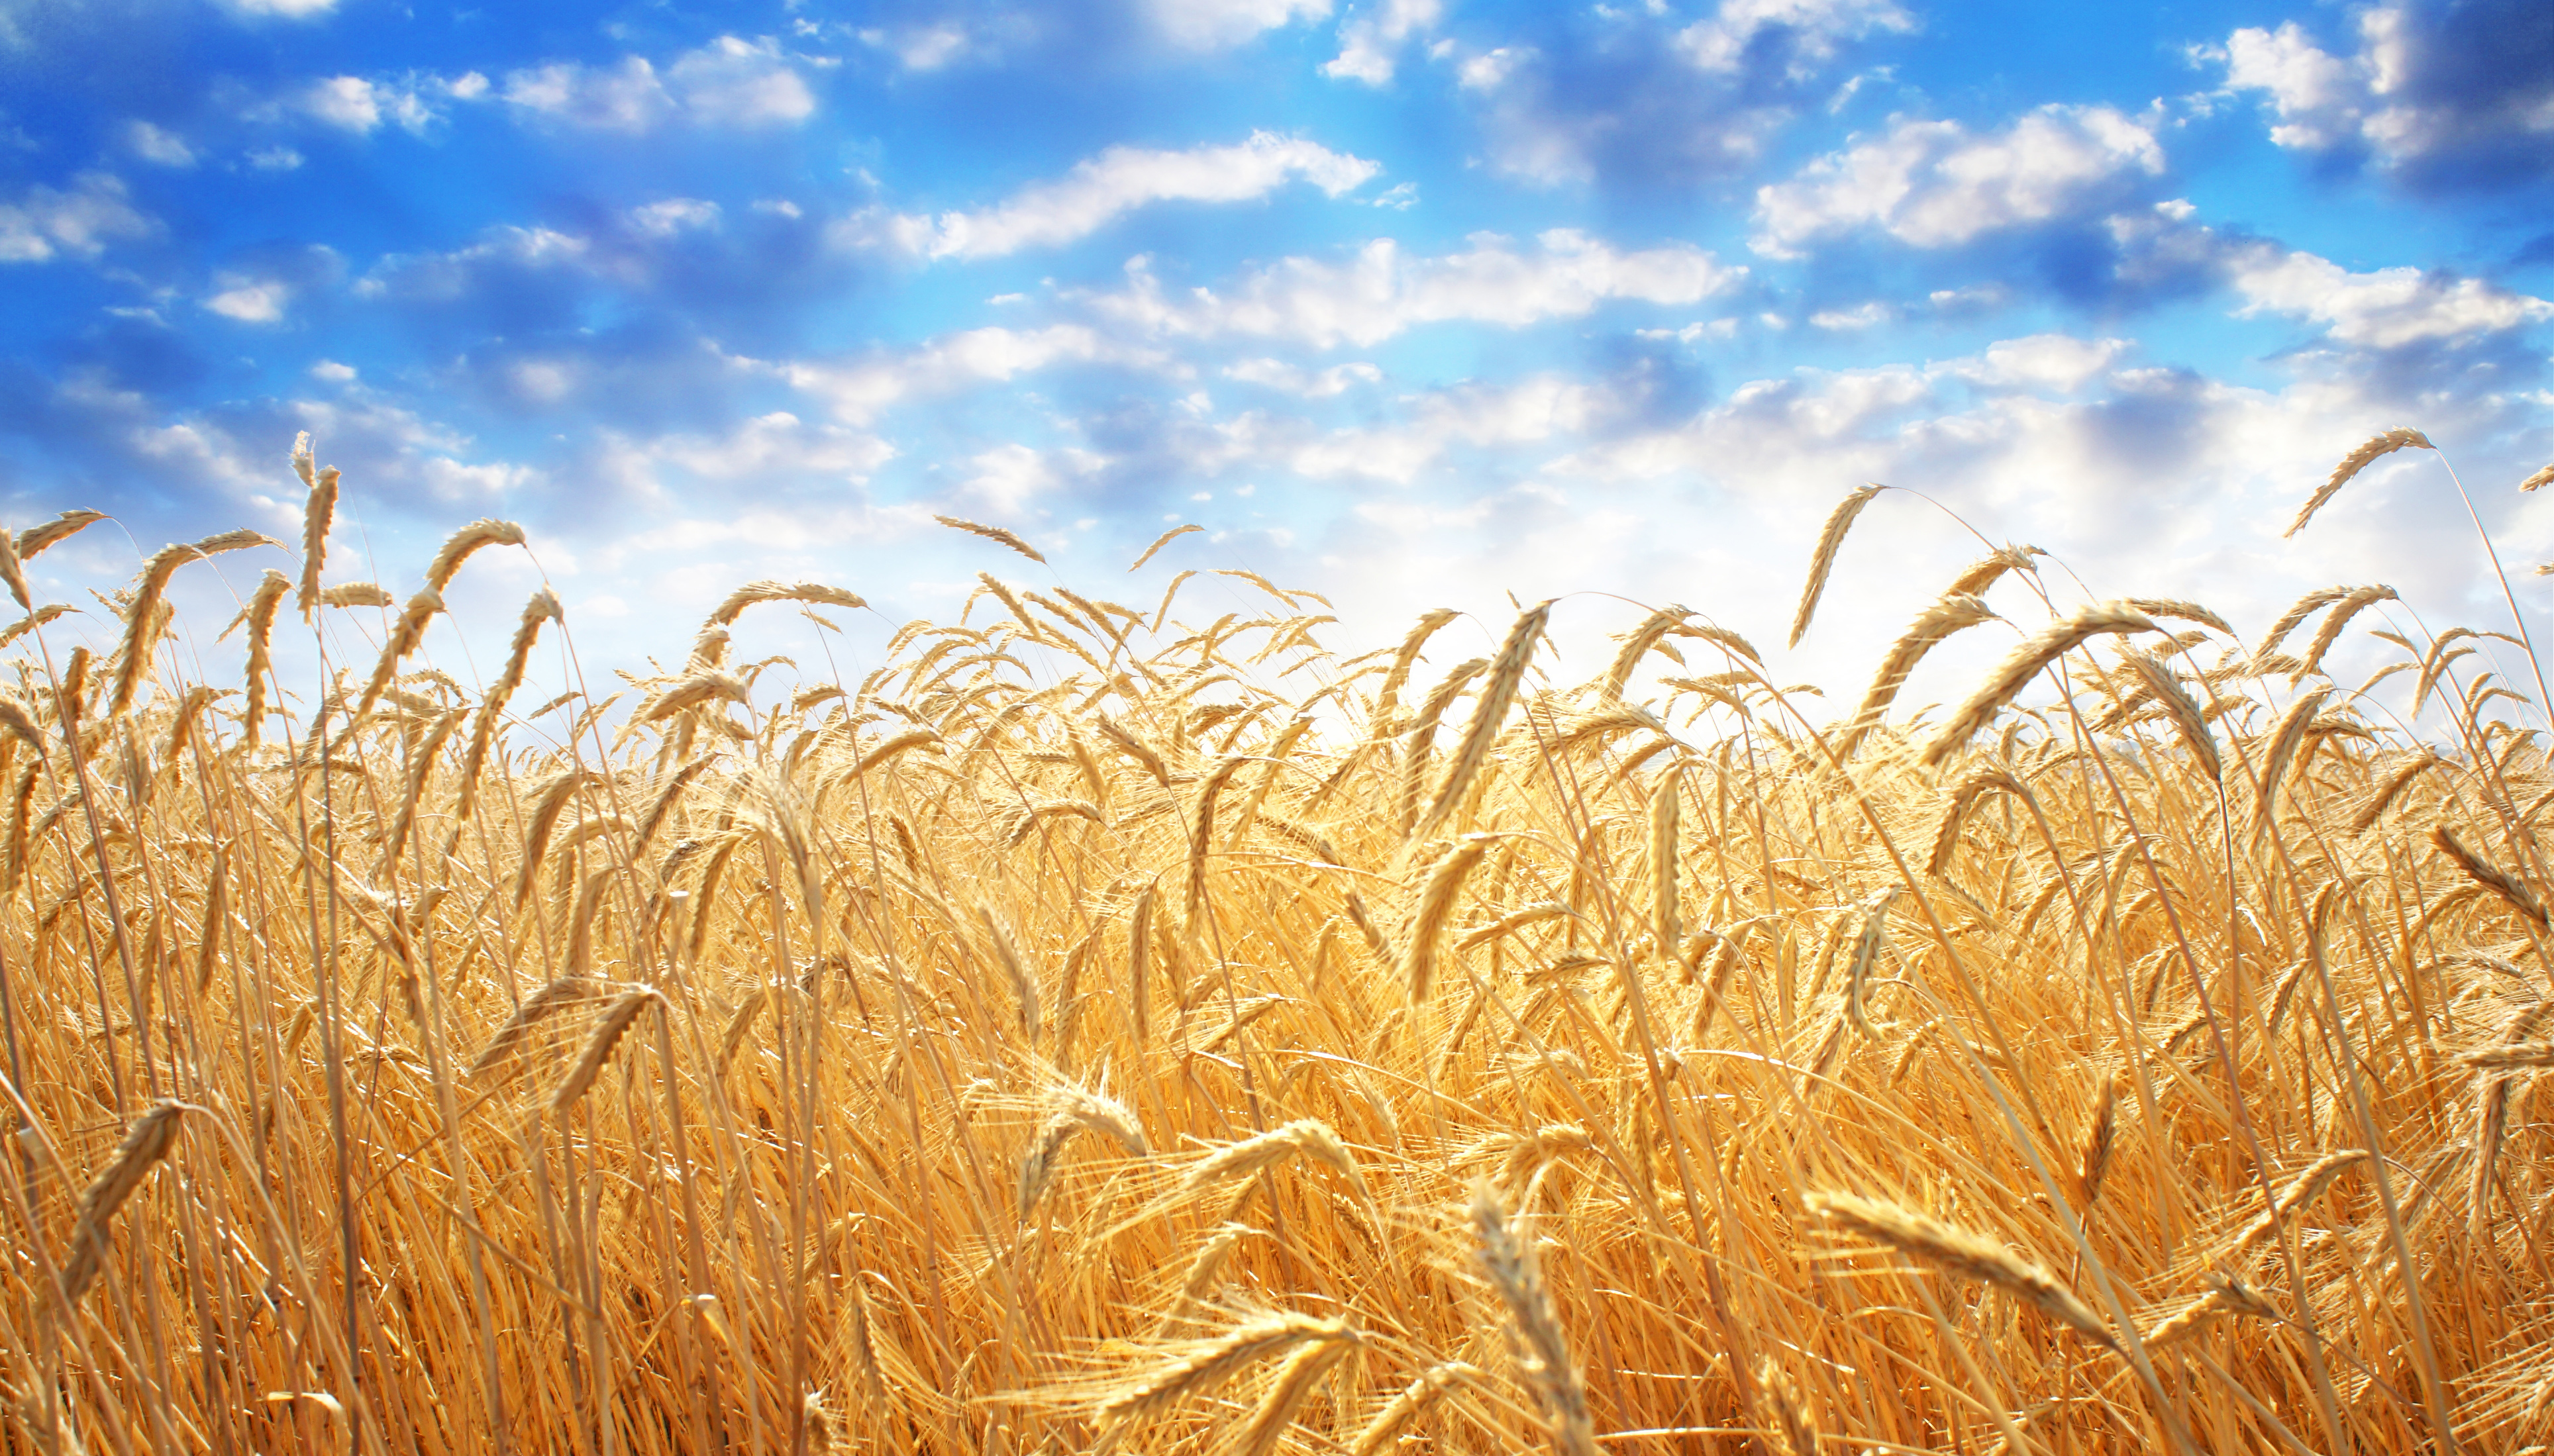 158-15223254-ear-of-wheat.jpg